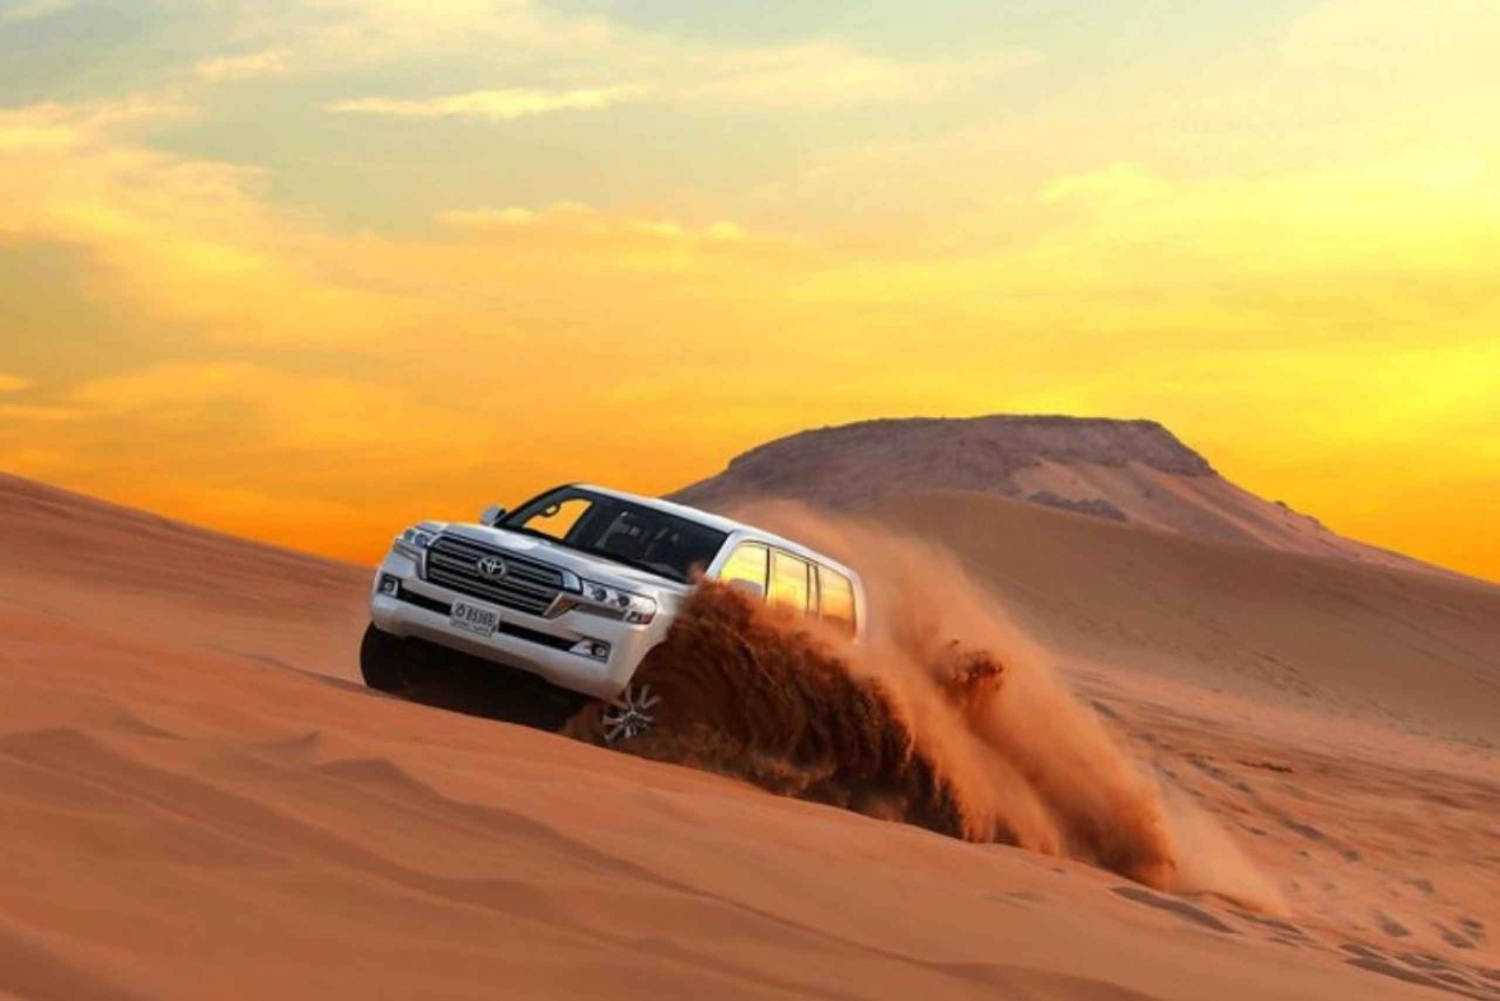 Dubaj: Off-road Desert Safari, kolacja, pokazy, wielbłąd i więcej